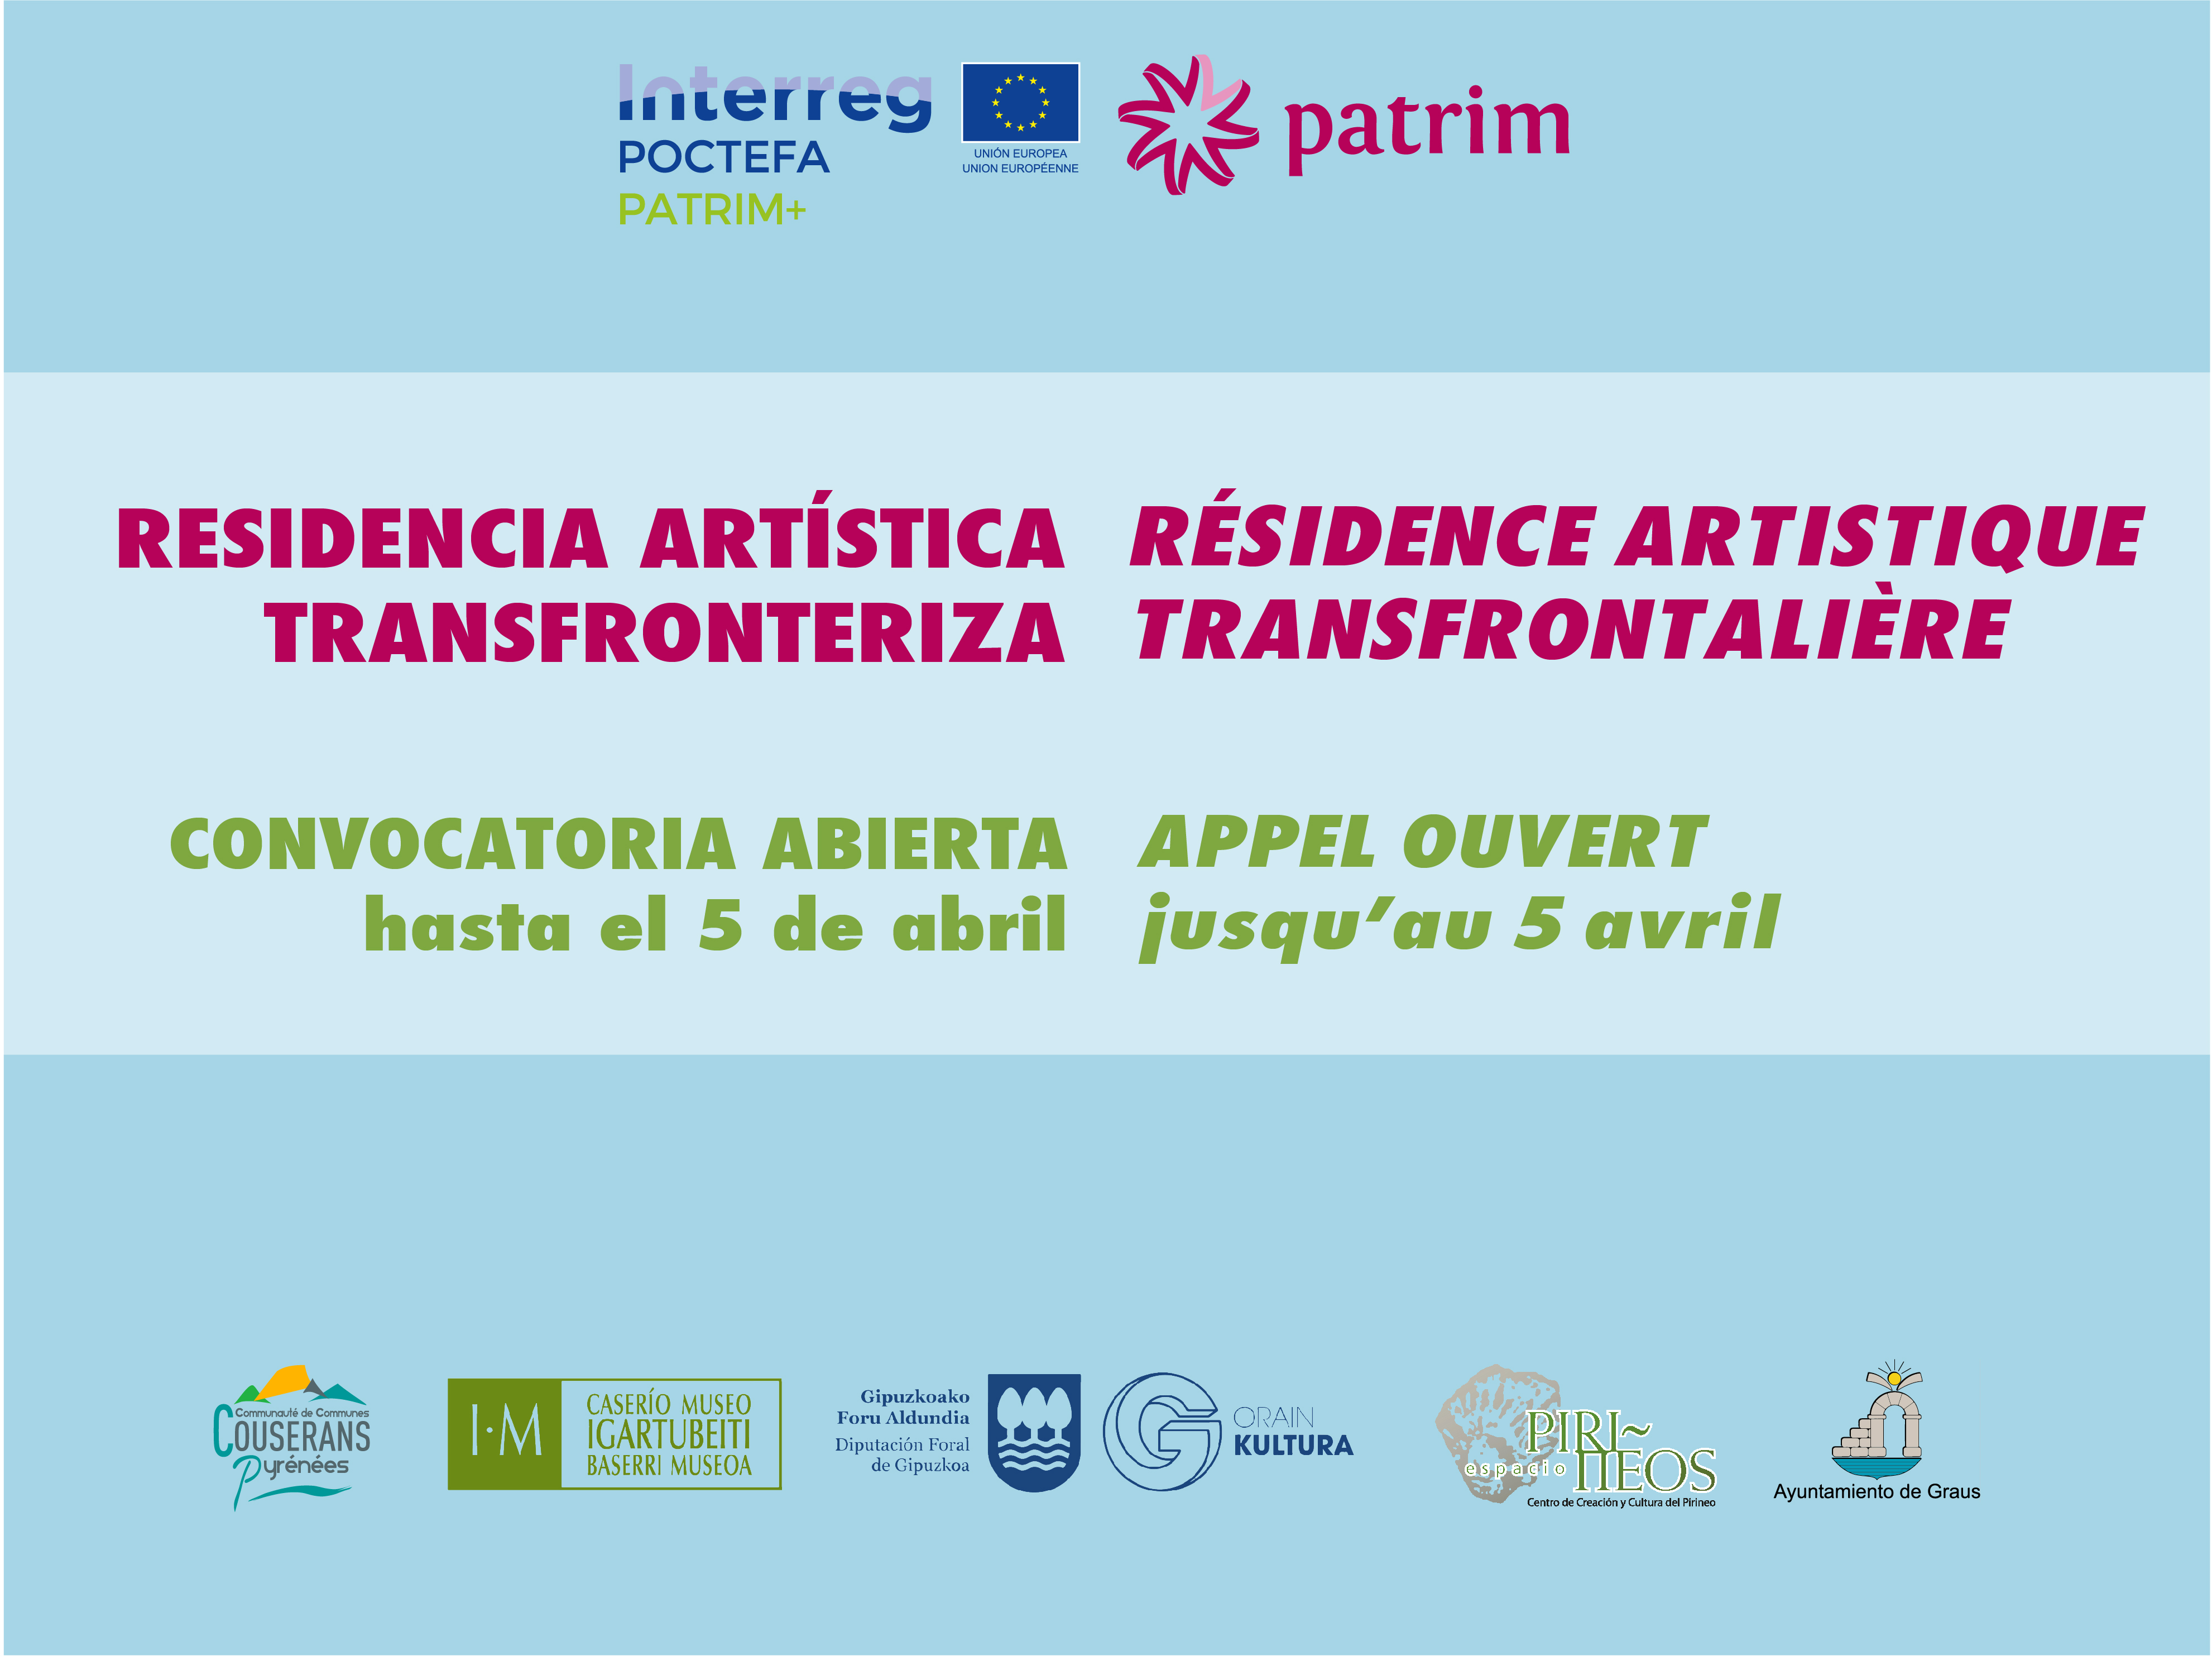 Abierta la convocatoria para la residencia de artistas PATRIM+ en Igartubeiti 